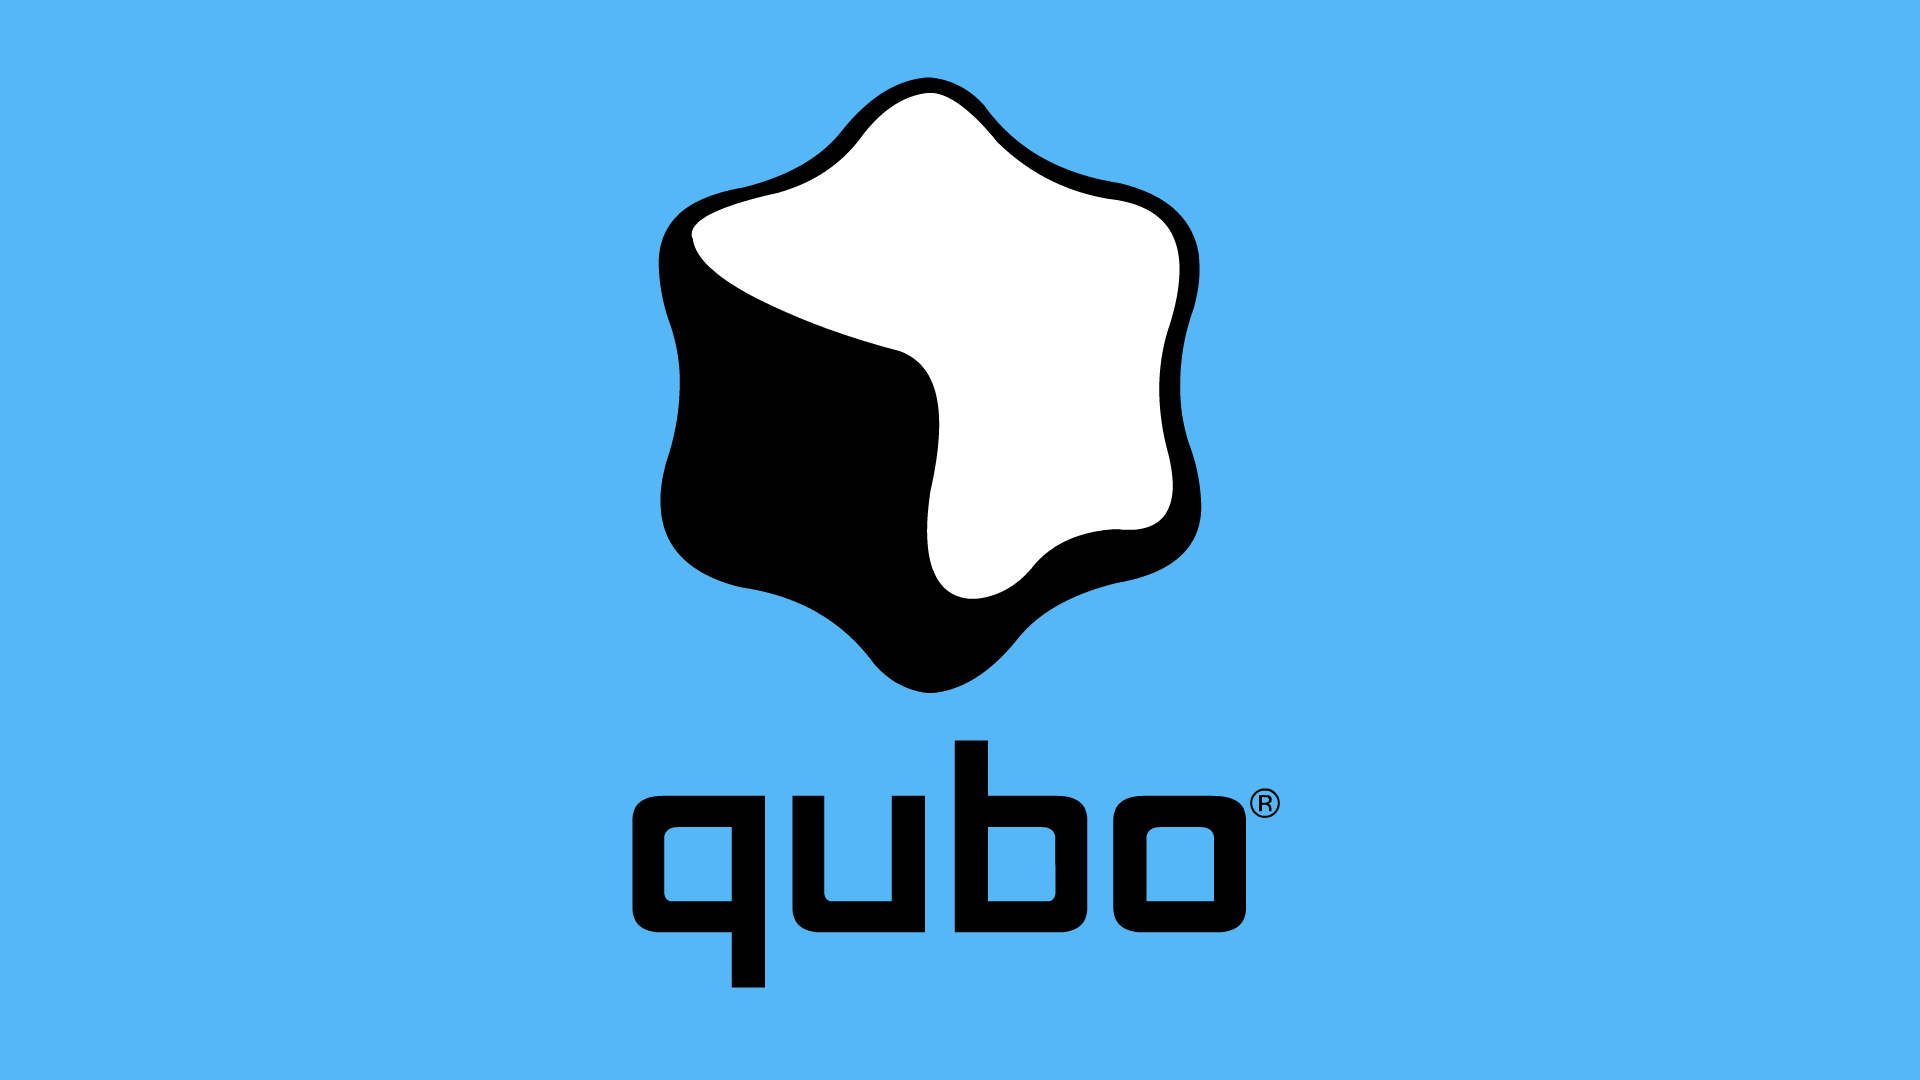 Old TeenNick Logo - Qubo